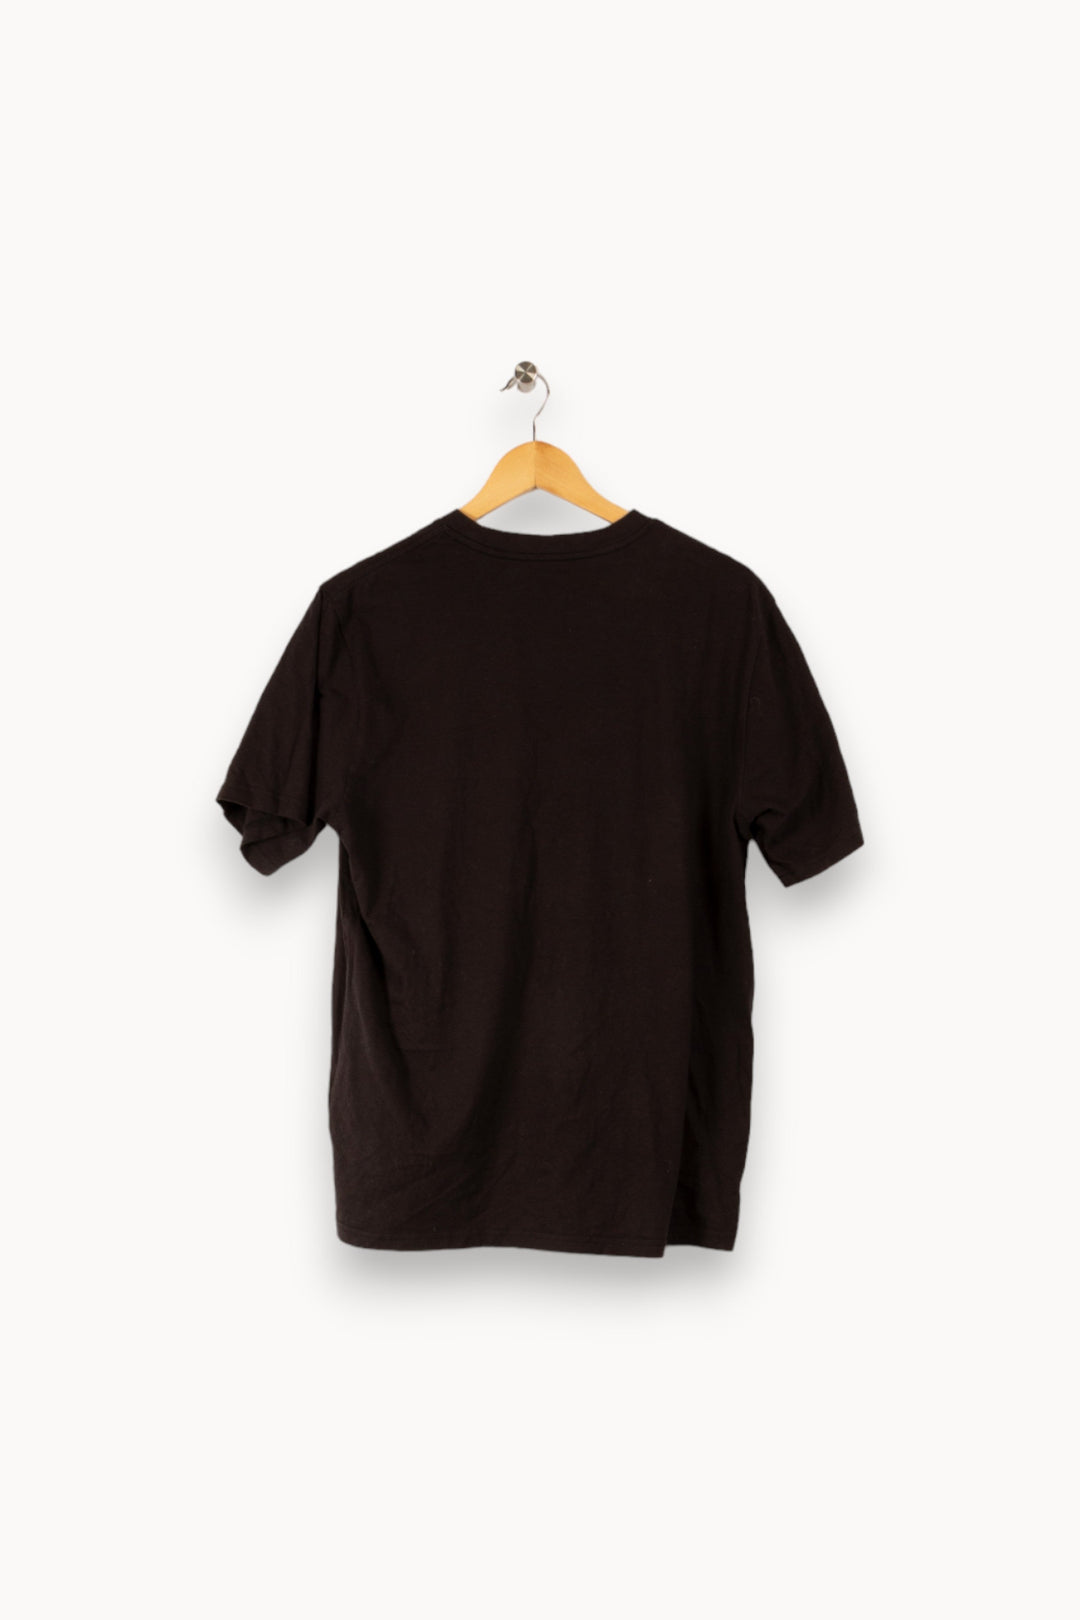 T-shirt noir - M/38